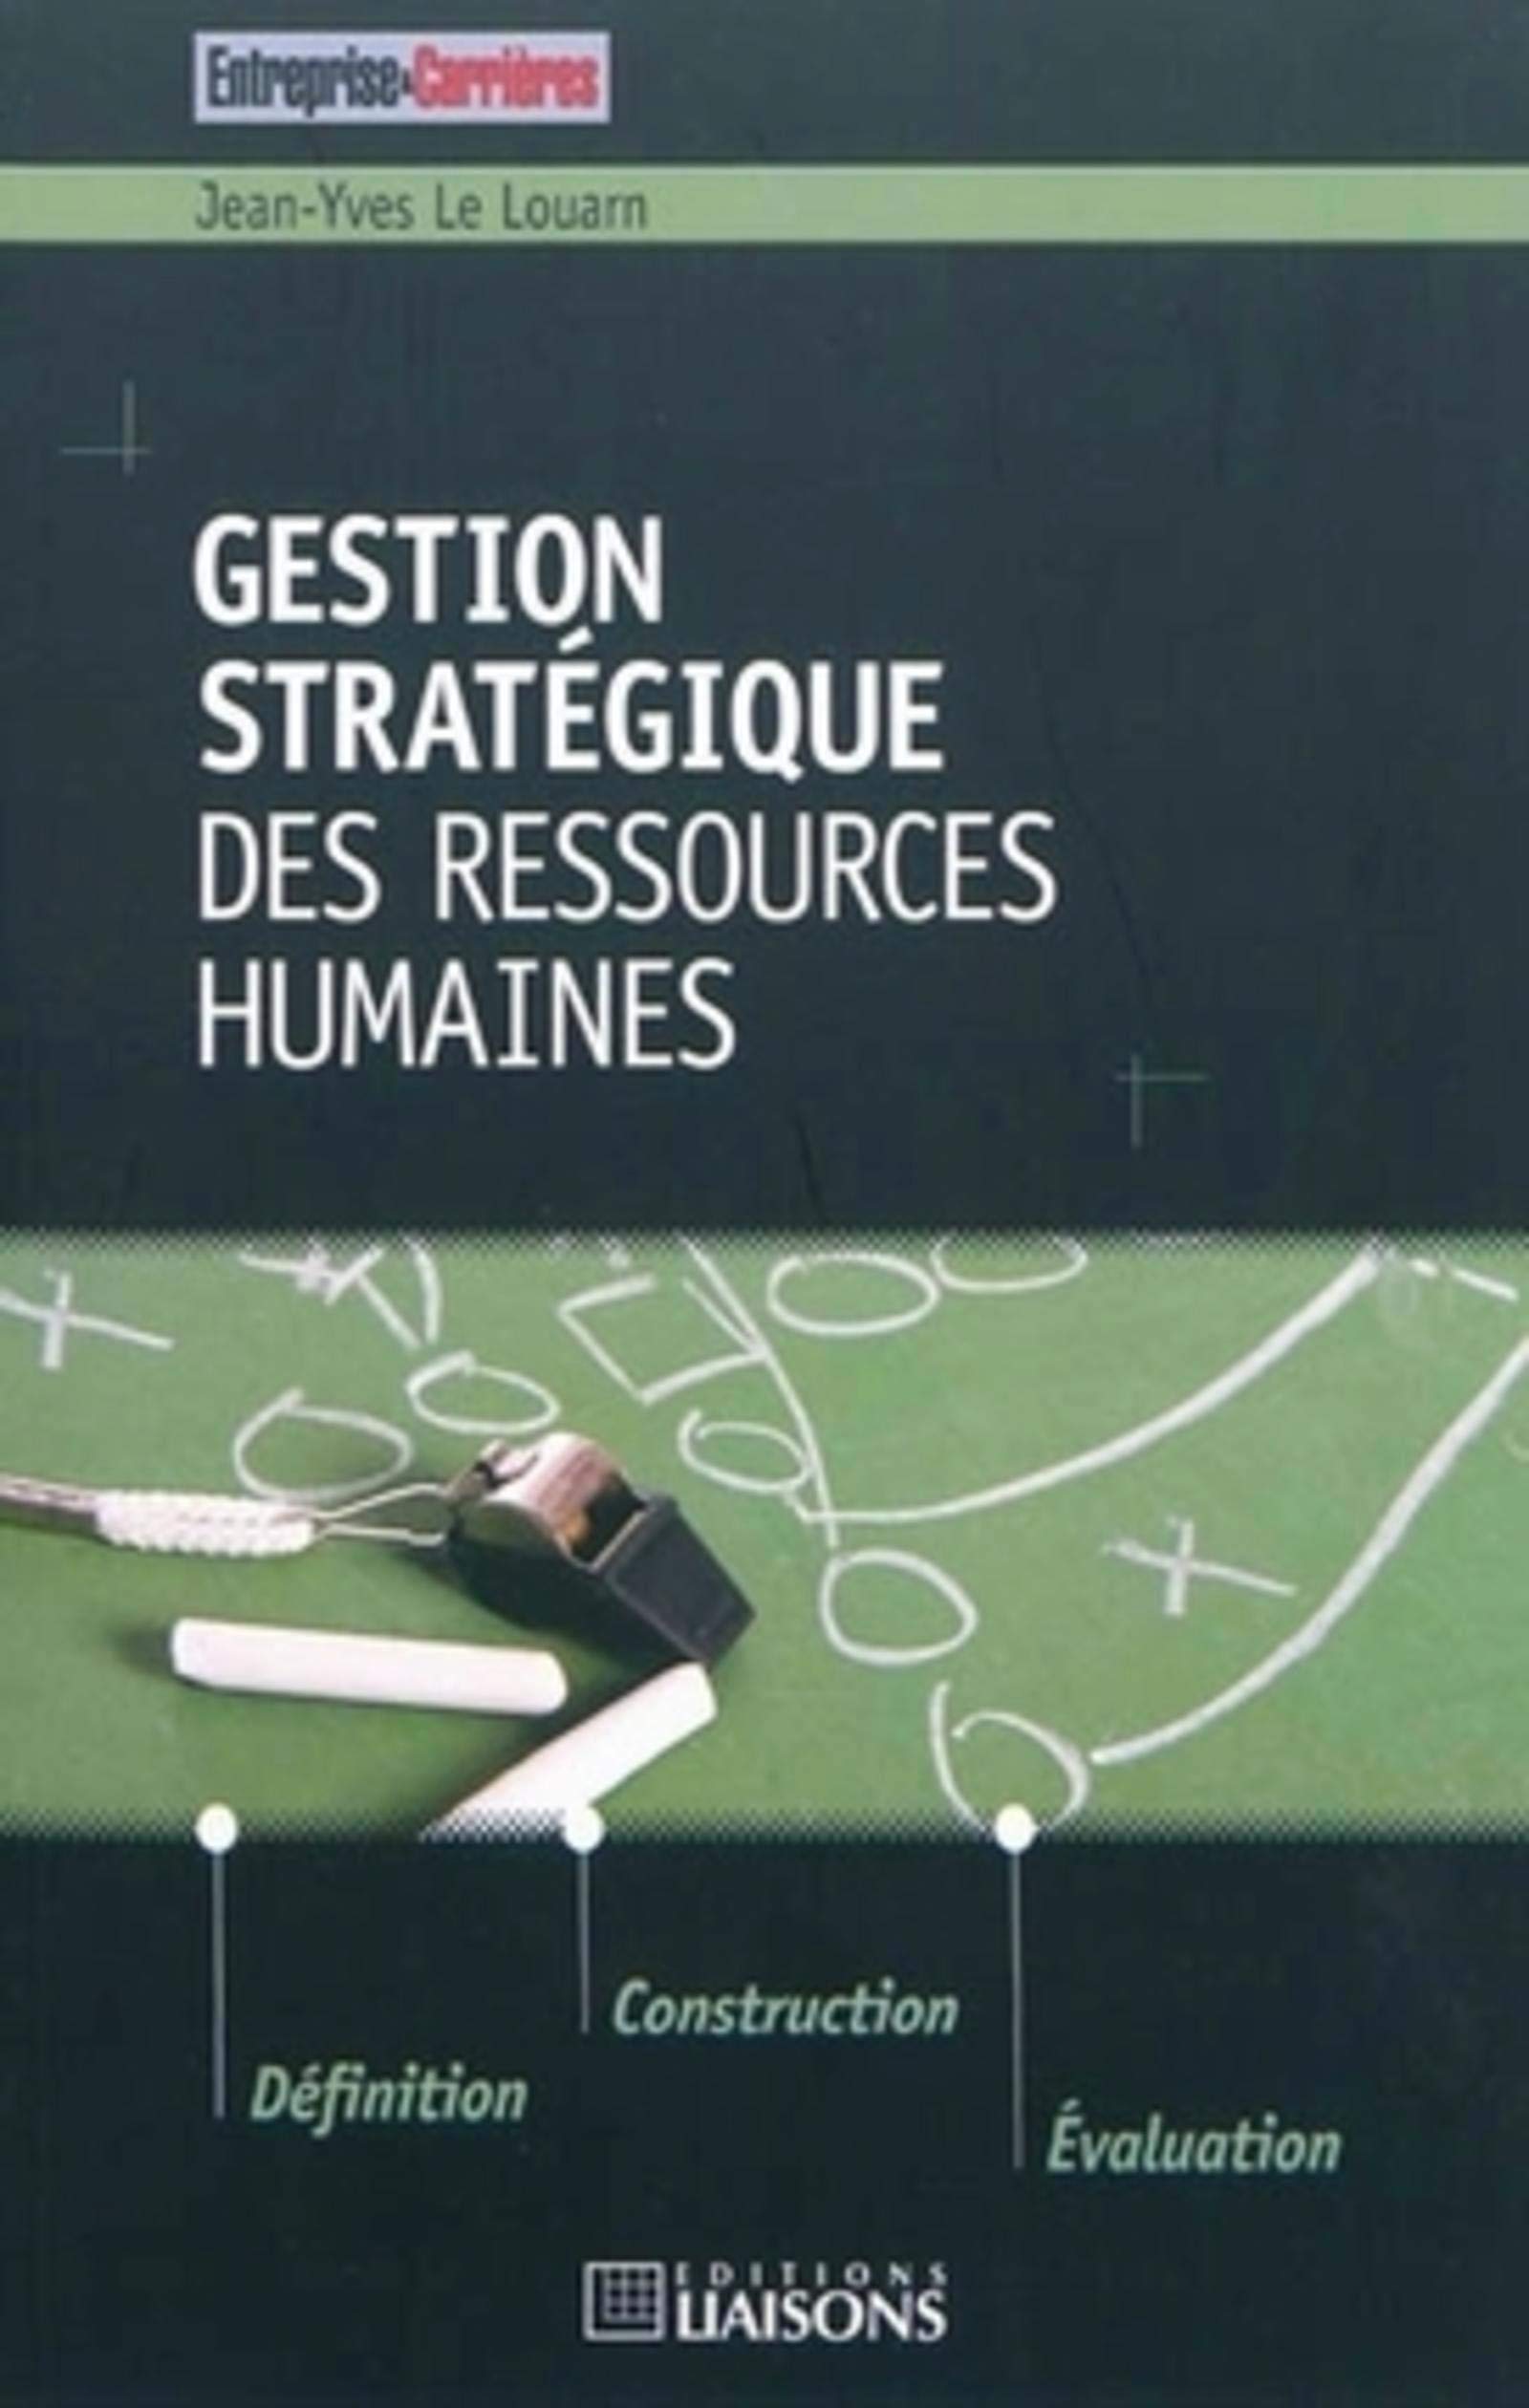 Gestion stratégique des ressources humaines: Définition. Construction. Evaluation.